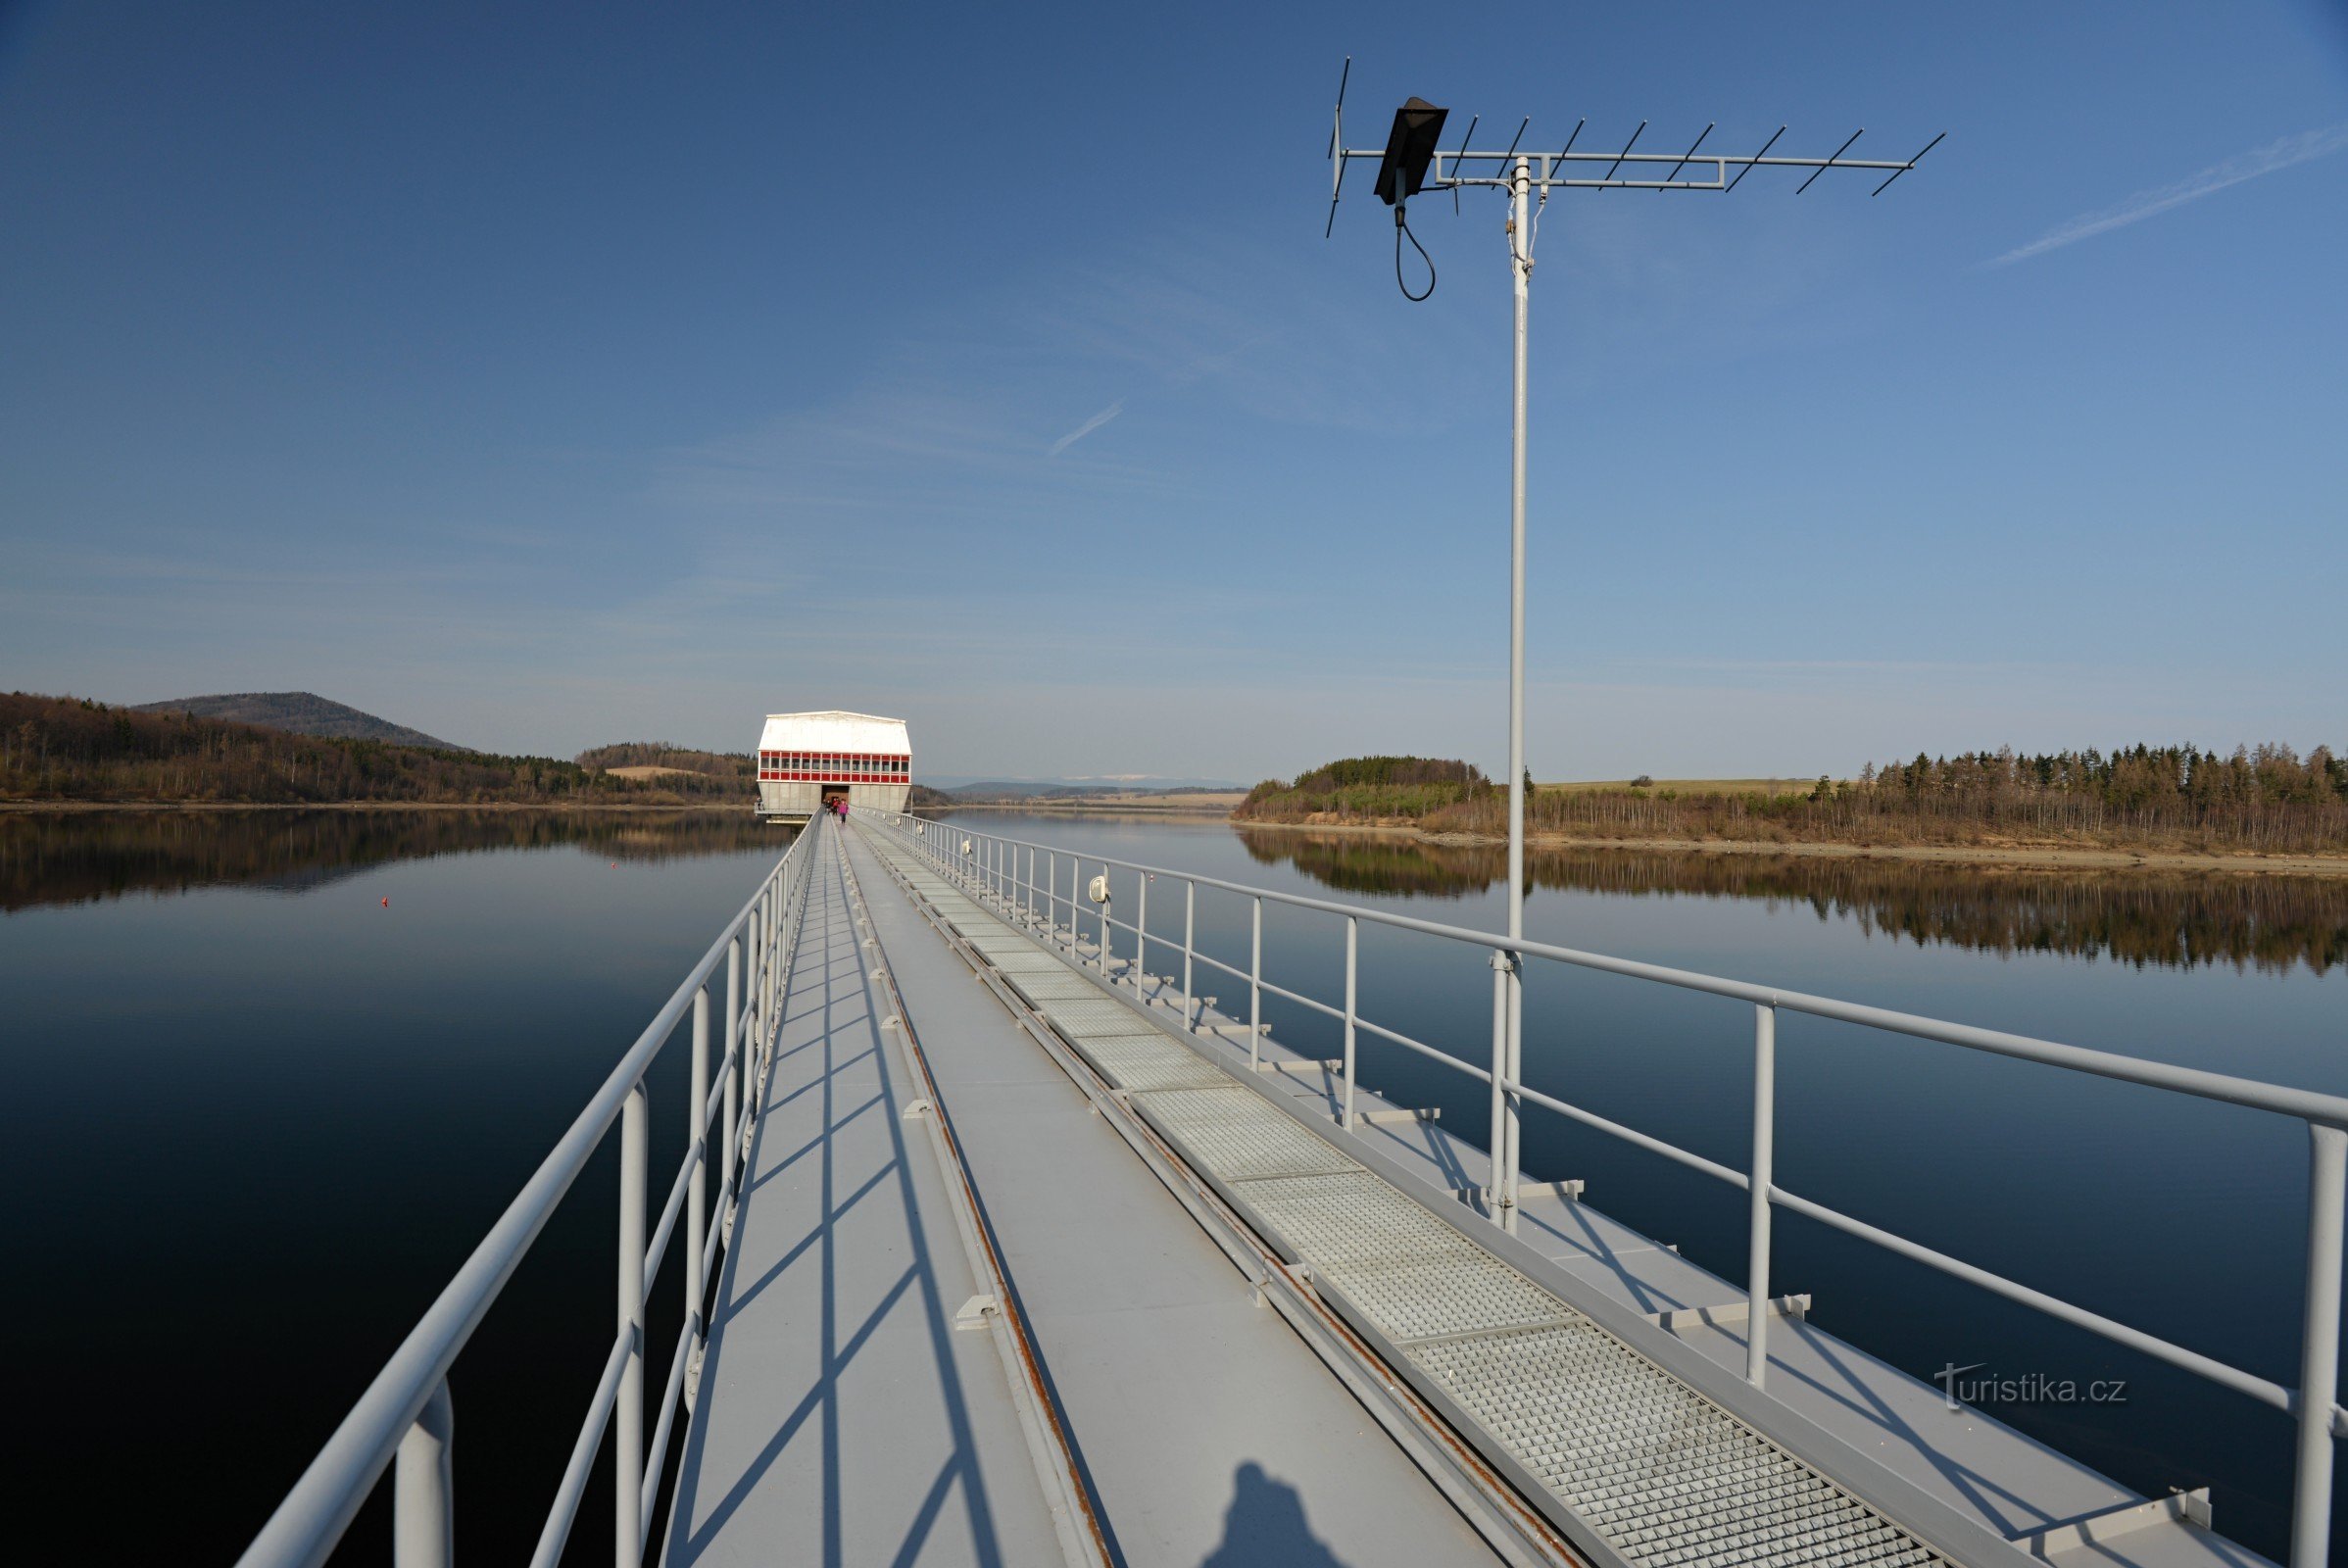 Slezská Harta Reservoir: loopbrug naar de toren